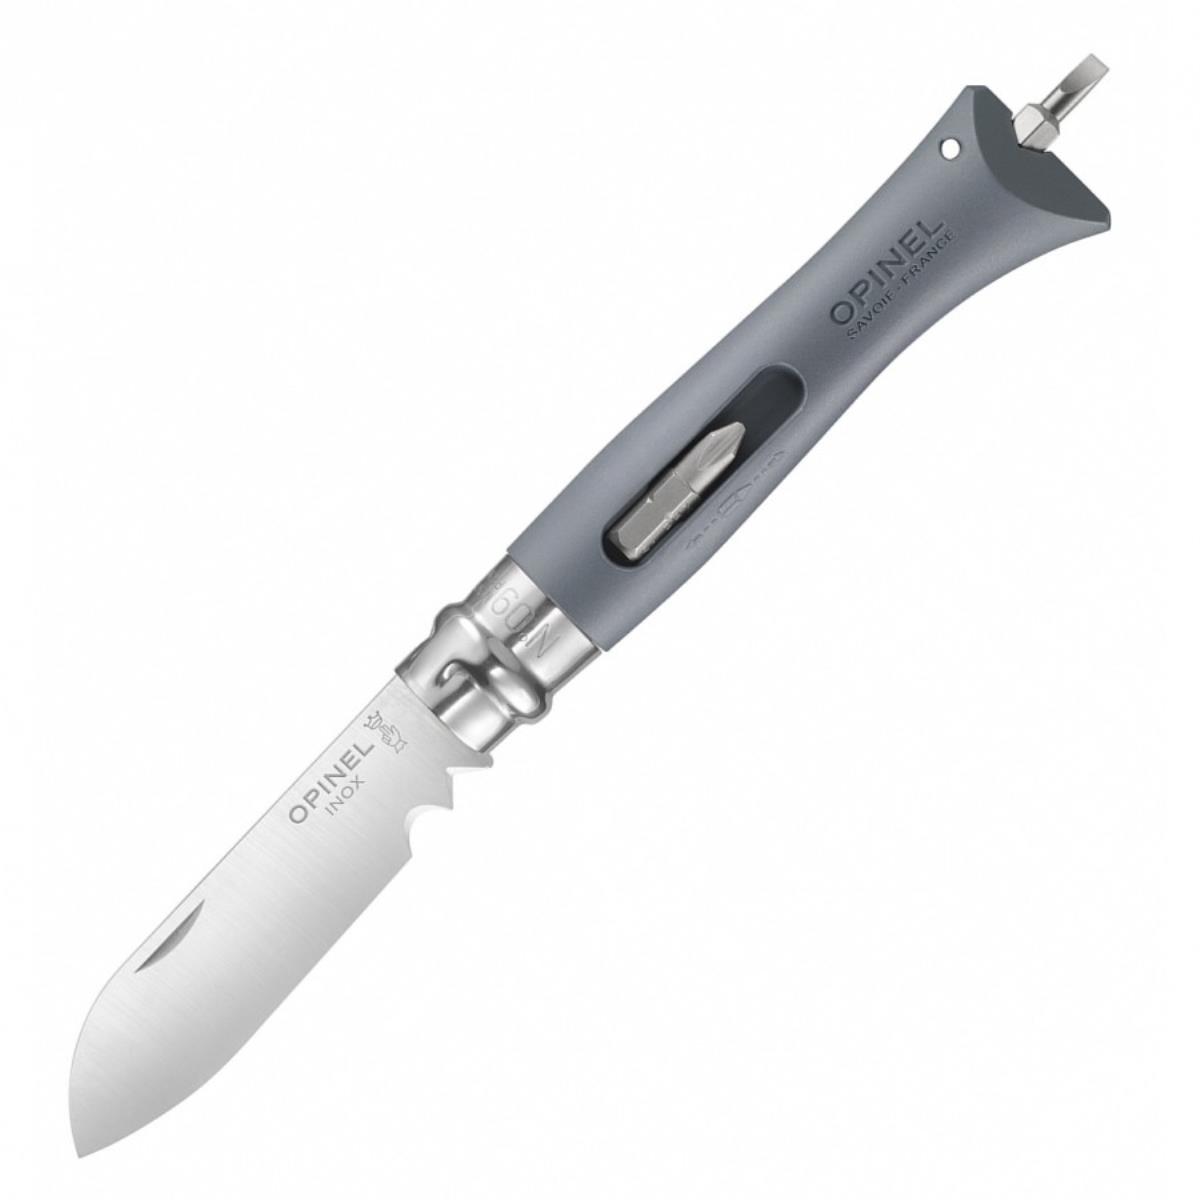 заглушка arh decore s12 ext f flat с отверстием arlight пластик Нож №9 VRI  DIY Grey (нержавеющая сталь, рукоять пластик, длина клинка 8 см) 0017926 OPINEL